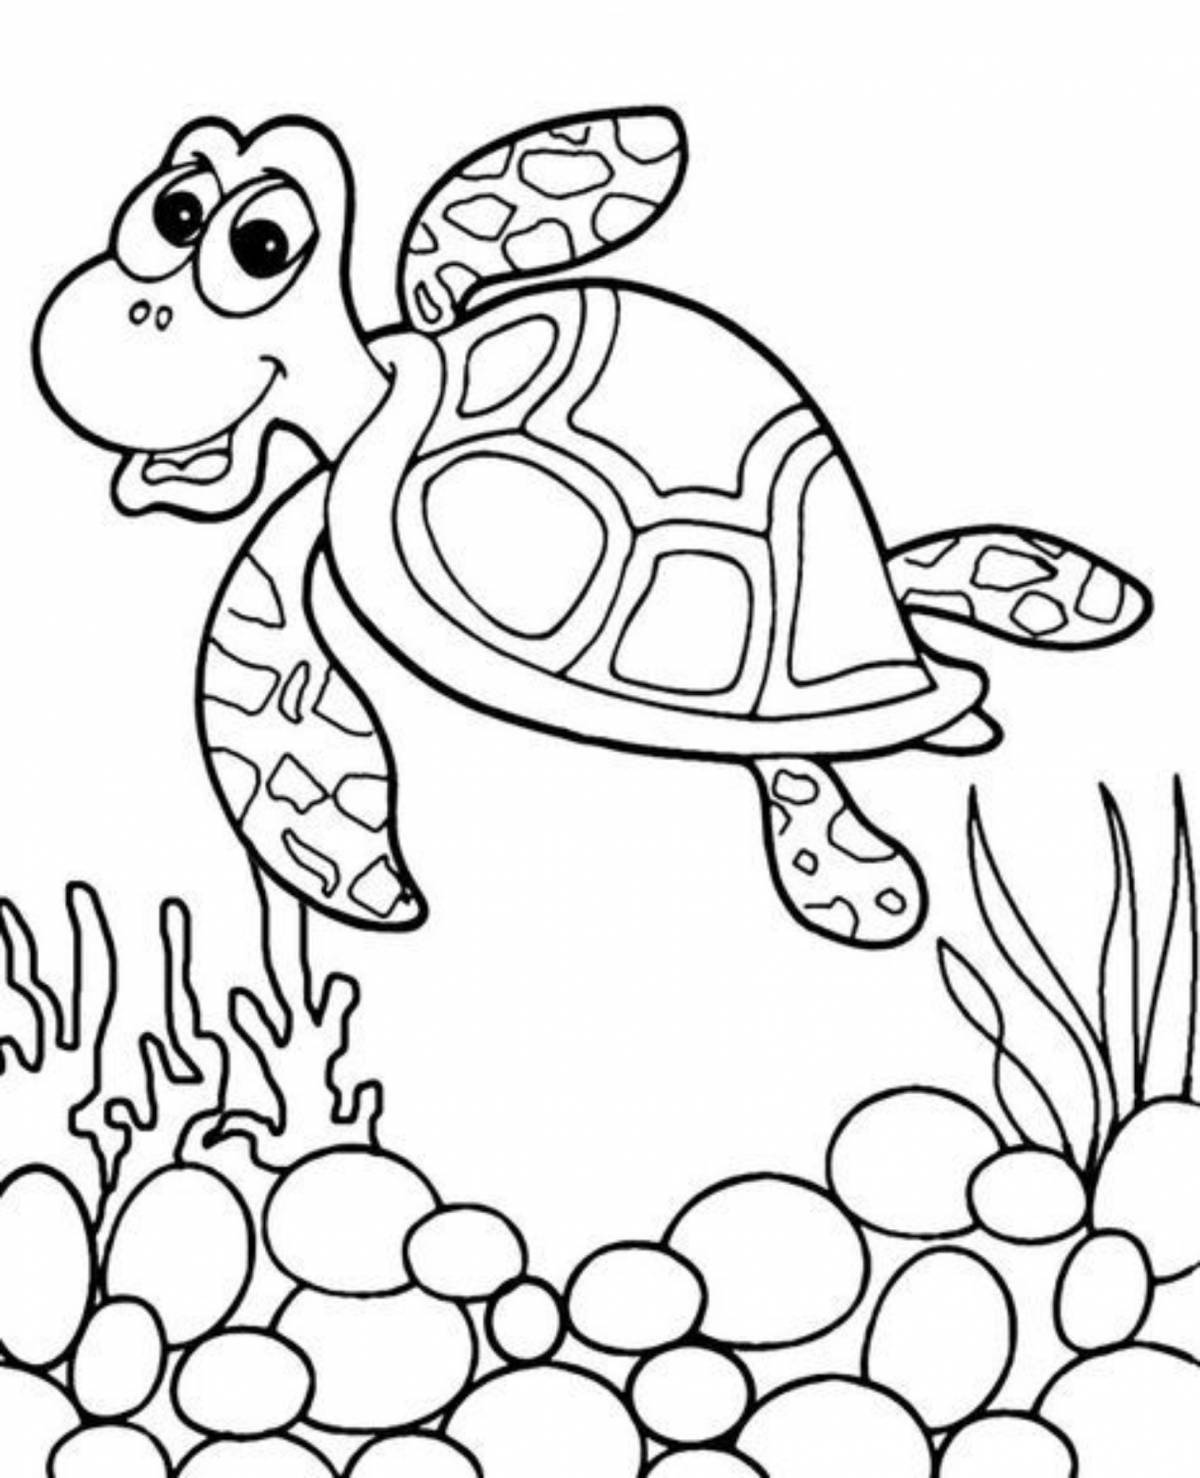 Exquisite turtle coloring